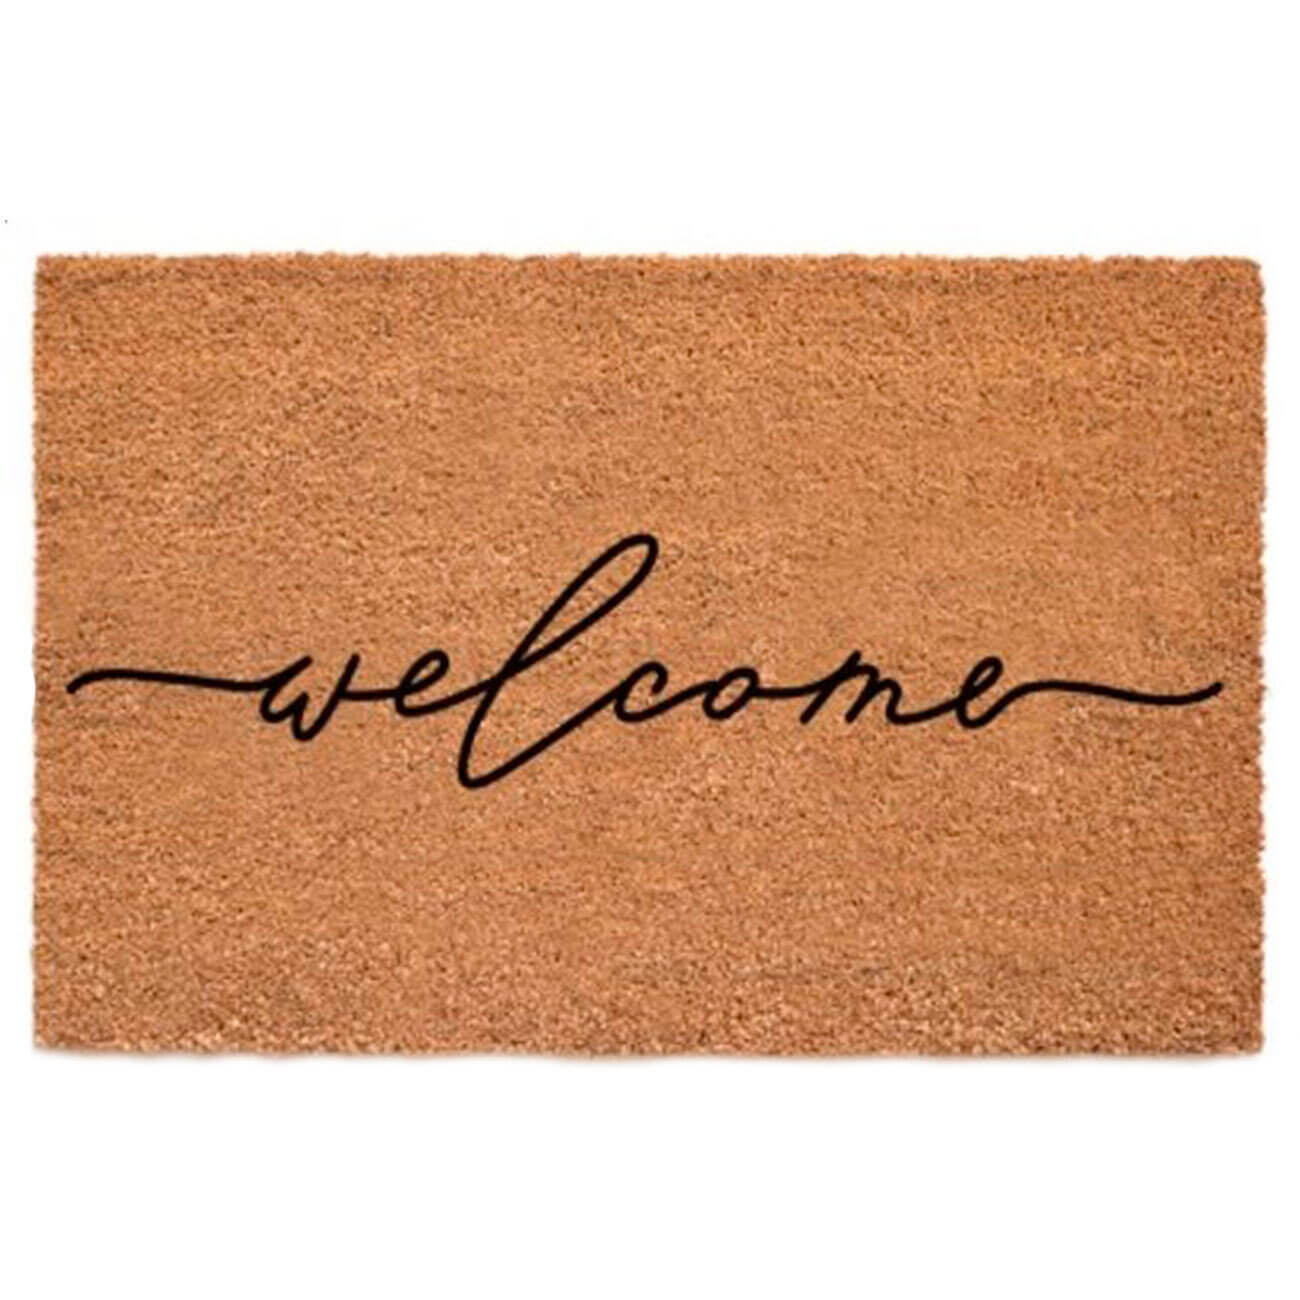 Коврик придверный, 45х75 см, кокос/пвх, коричневый, Welcome, Home deco коврик inspire rubesto welcome a 44x73 см резина